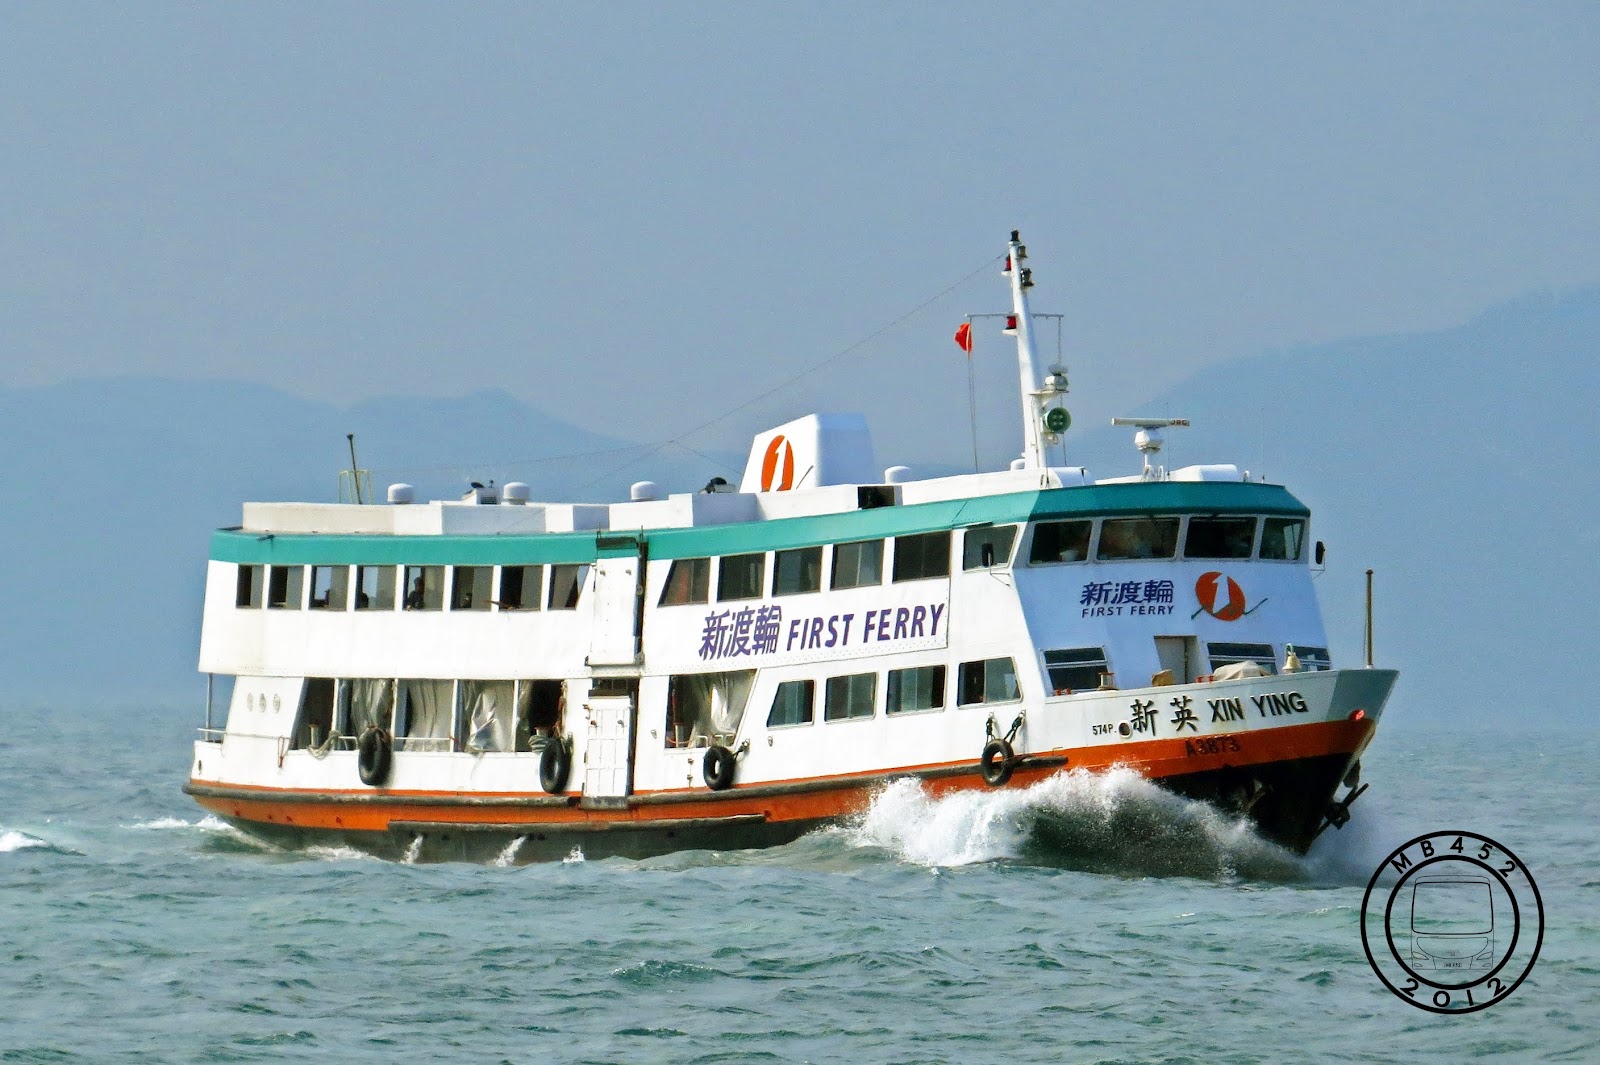 新渡輪 New World First Ferry - 雙層普通船 - 香港渡輪集 Hong Kong Ferries